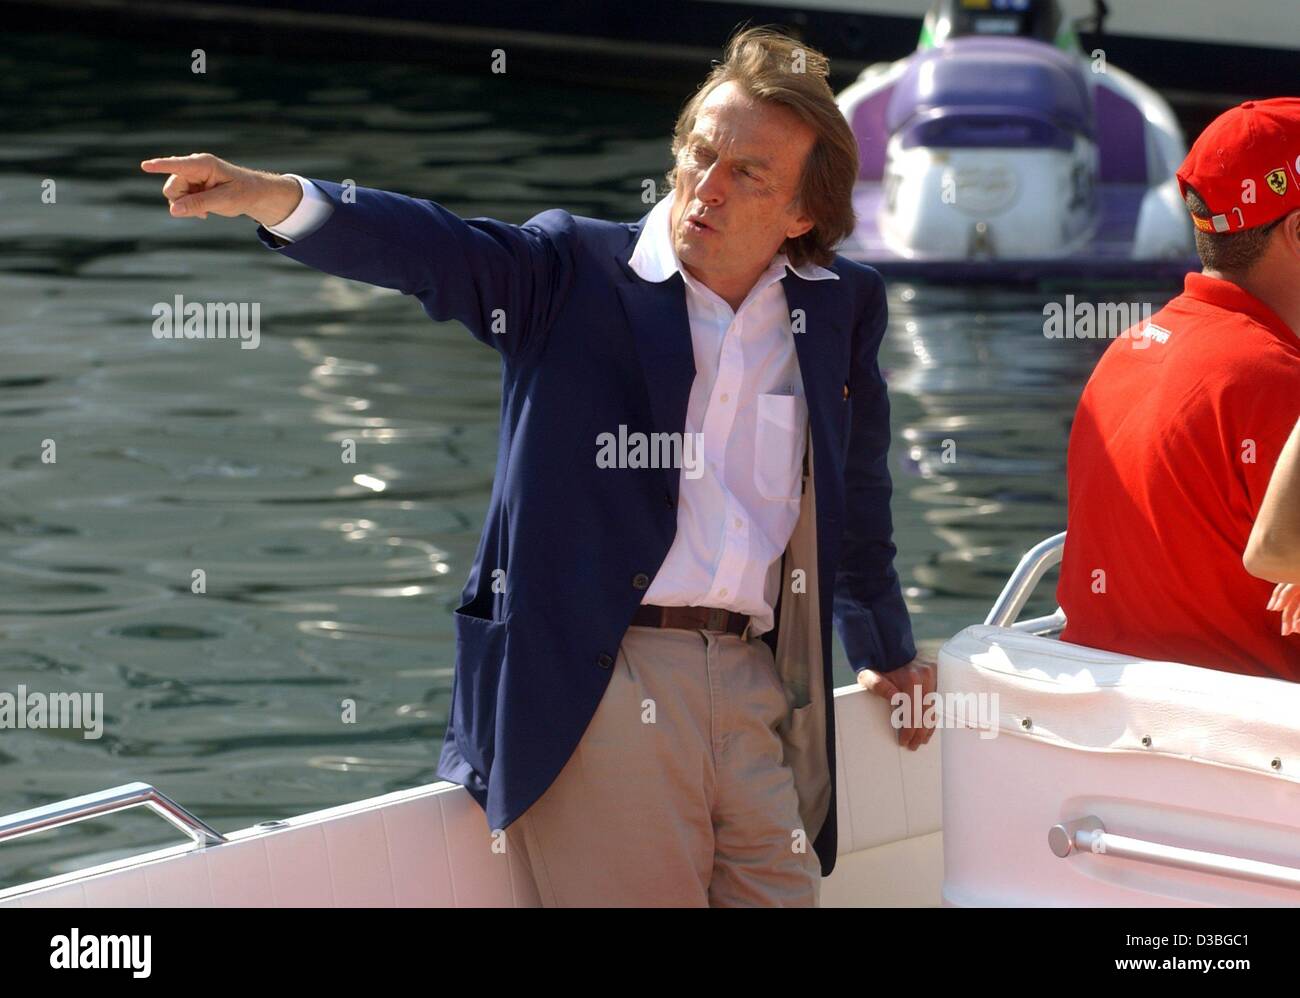 (Dpa) - Luca di Montezemolo, Presidente del Consiglio italiano vettura sportiva maker Ferrari, punti la direzione al suo skipper a bordo della sua barca nel porto di Monaco, 30 maggio 2003. Il Grand Prix di Monaco ha avuto luogo a Monte Carlo il 1 giugno 2003. Foto Stock